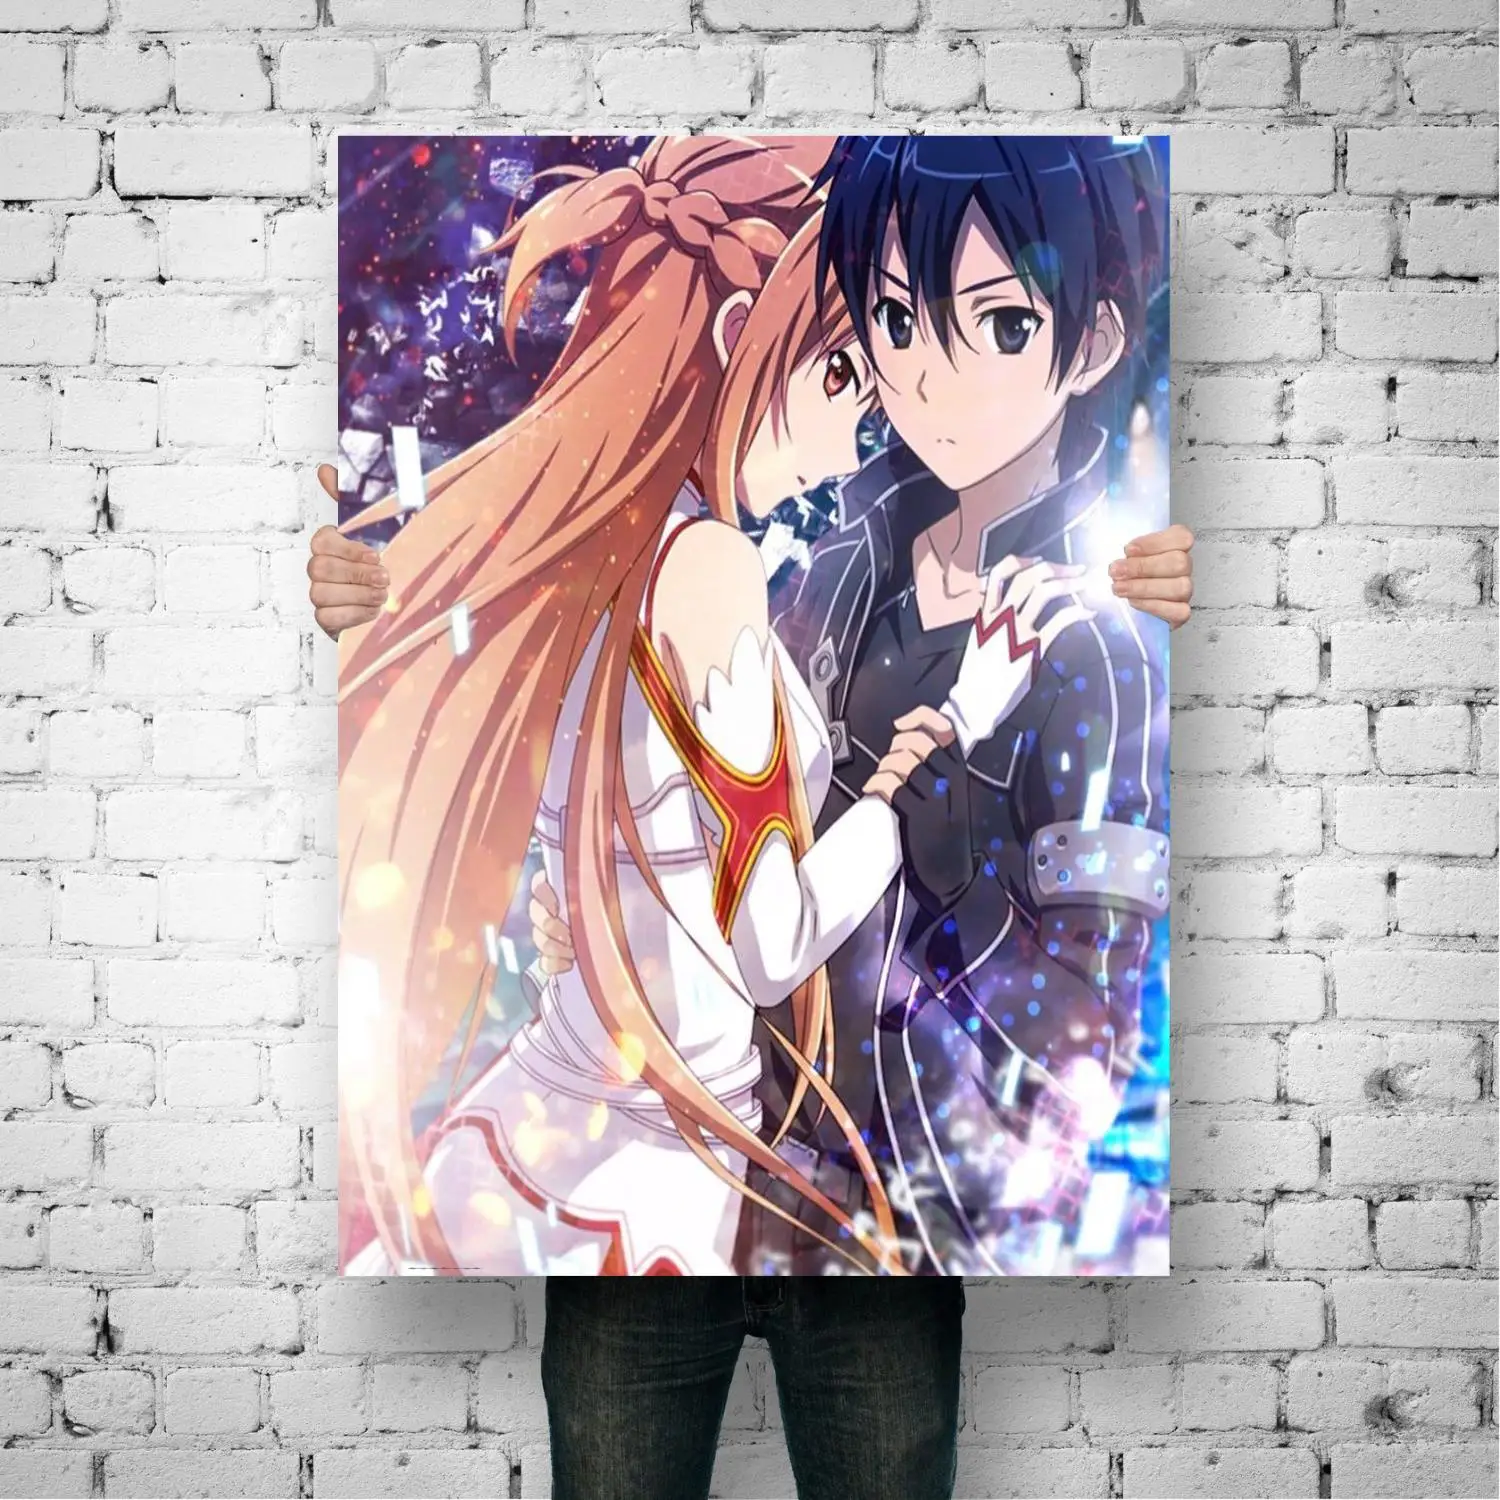 Imagen "S8311183ae7694403933bdc8c9176a328p" de muestra del producto Posters de Sword Art Online - Asuna y Kirito de la tienda online de regalos y coleccionables de cine, series, videojuegos, juguetes.